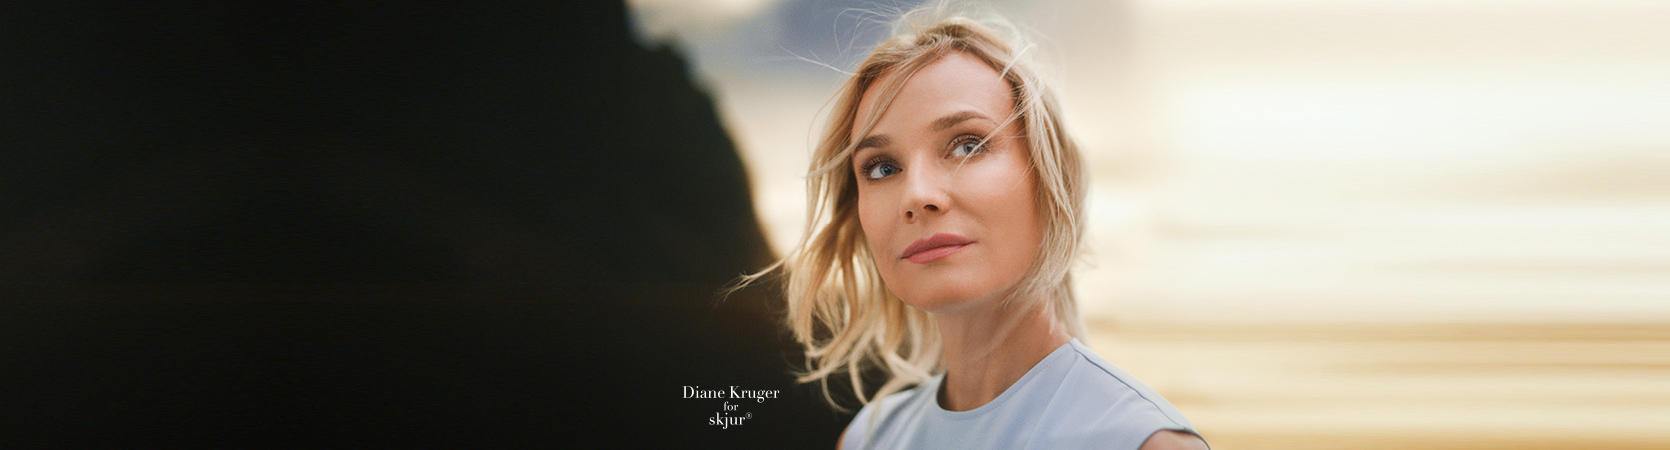 Diane Kruger for Skjur